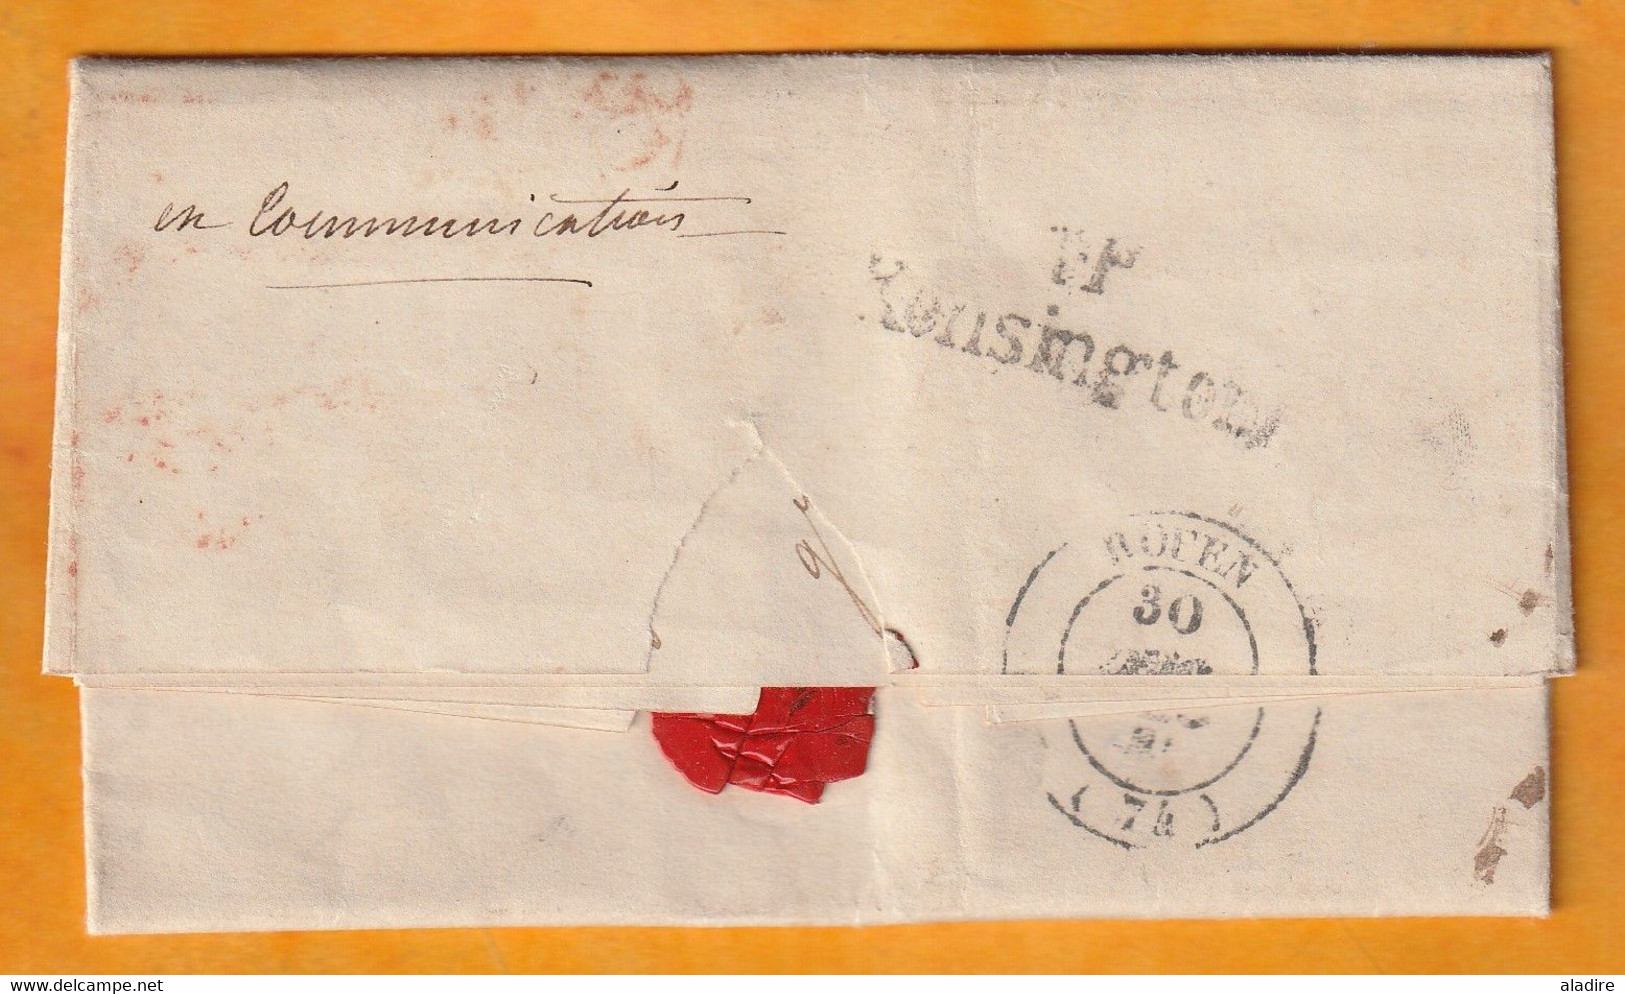 1847 - QV - Lettre pliée avec corresp. de 3 p en français de Kensington vers Rouen, France - Port Payé en Angleterre